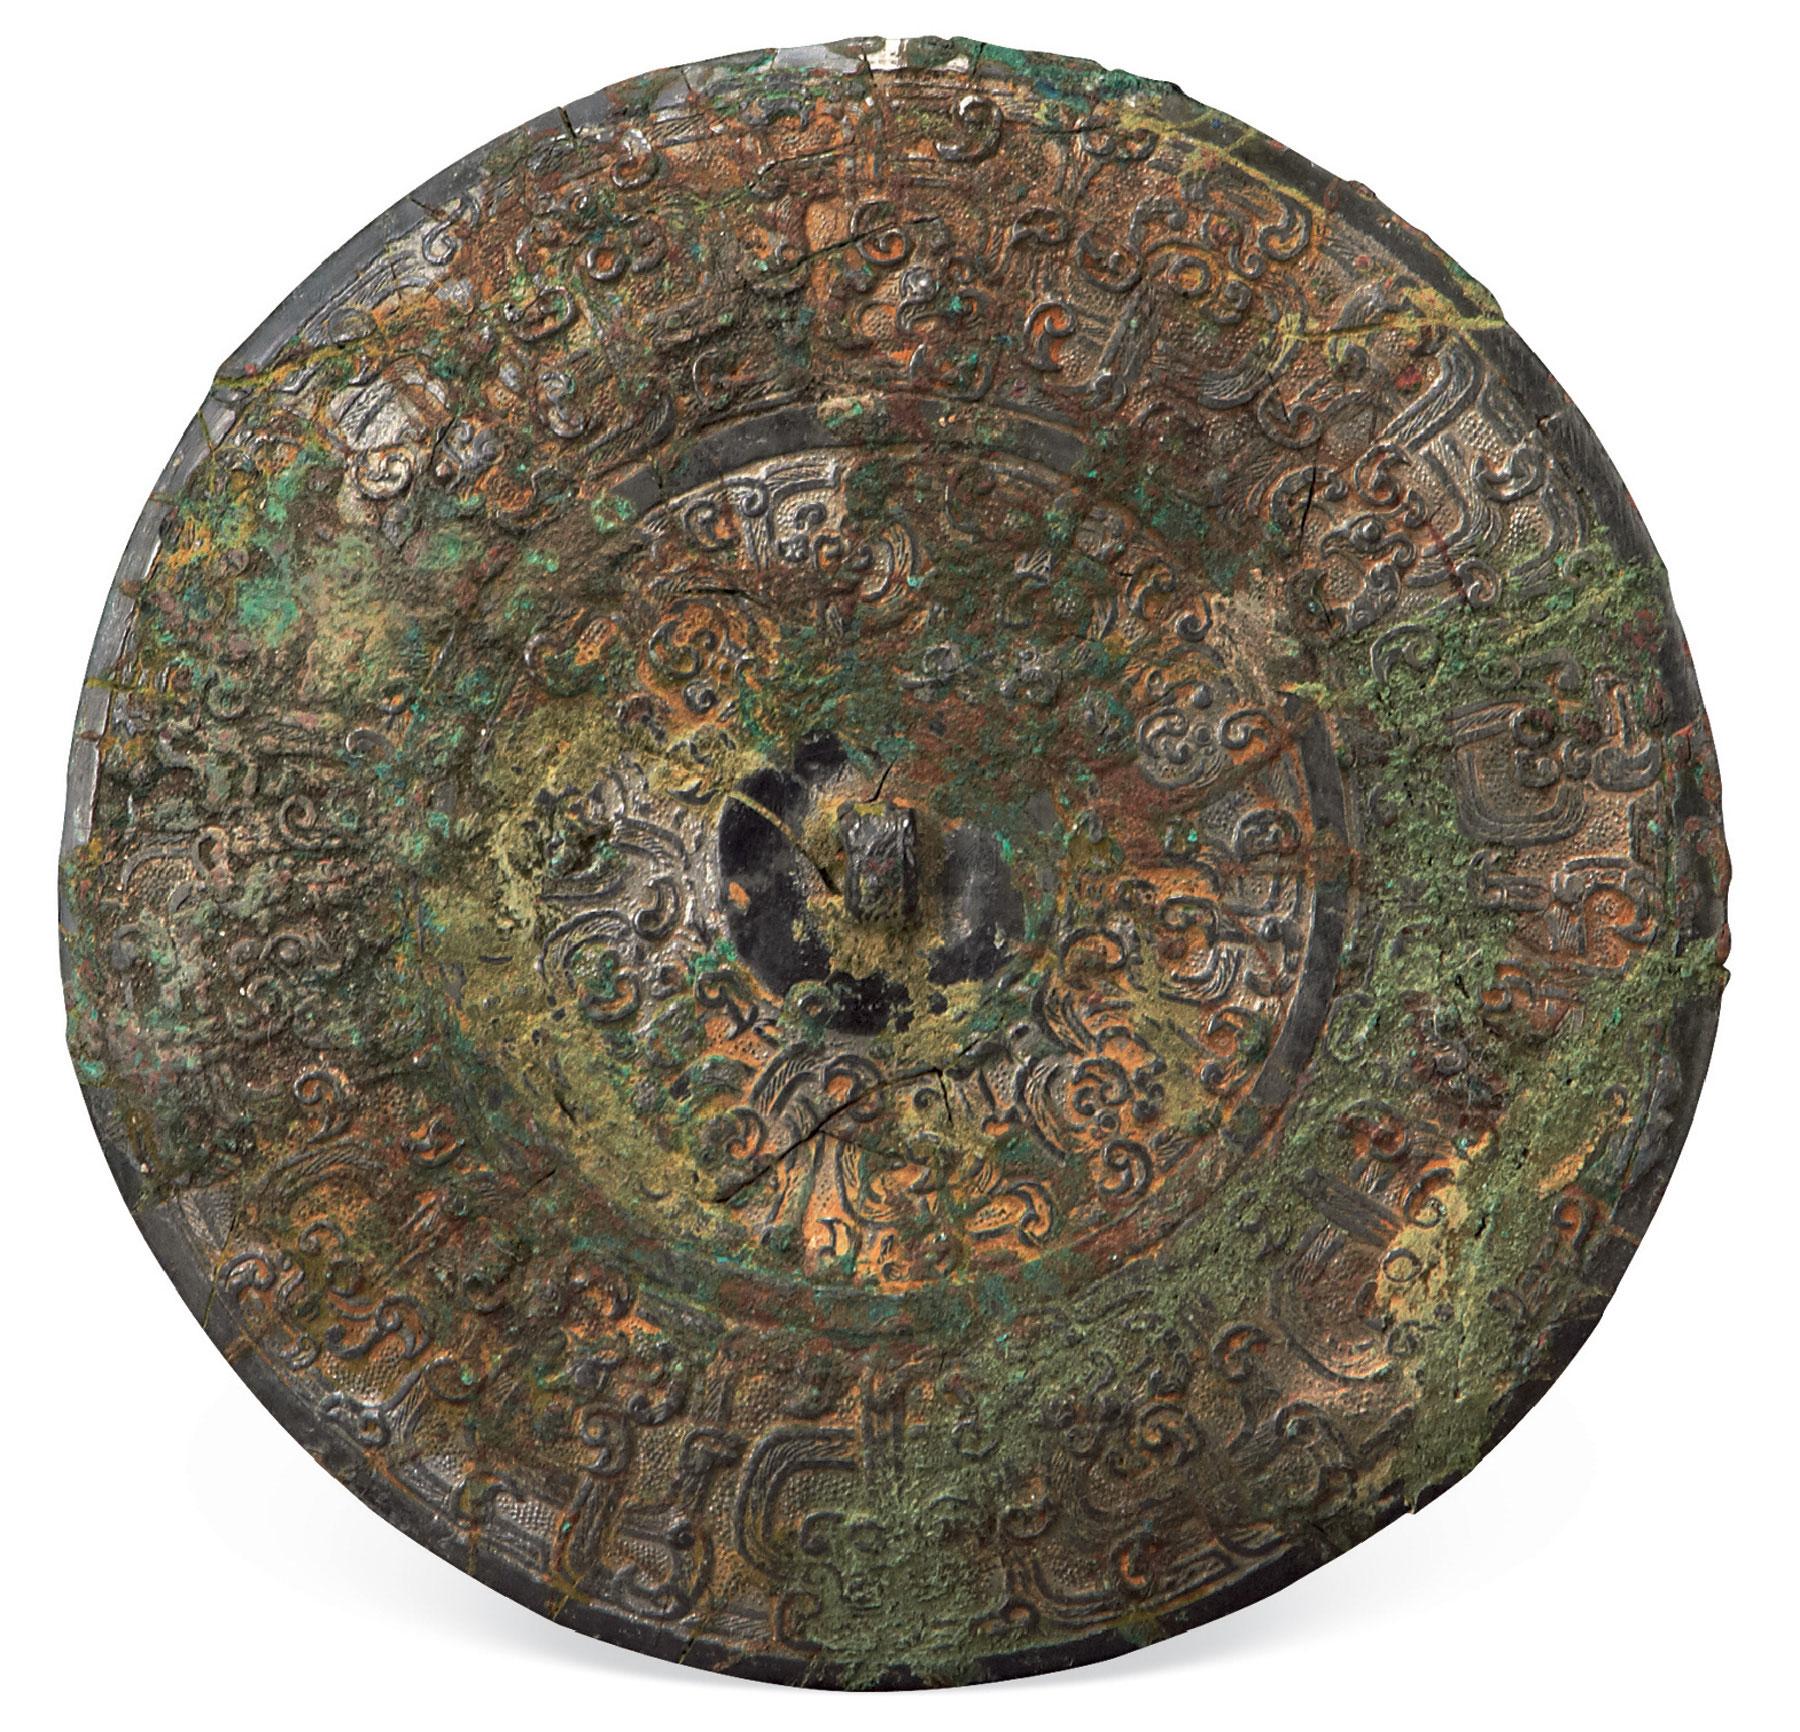 1502 春秋战国 蟠螭文凹面镜